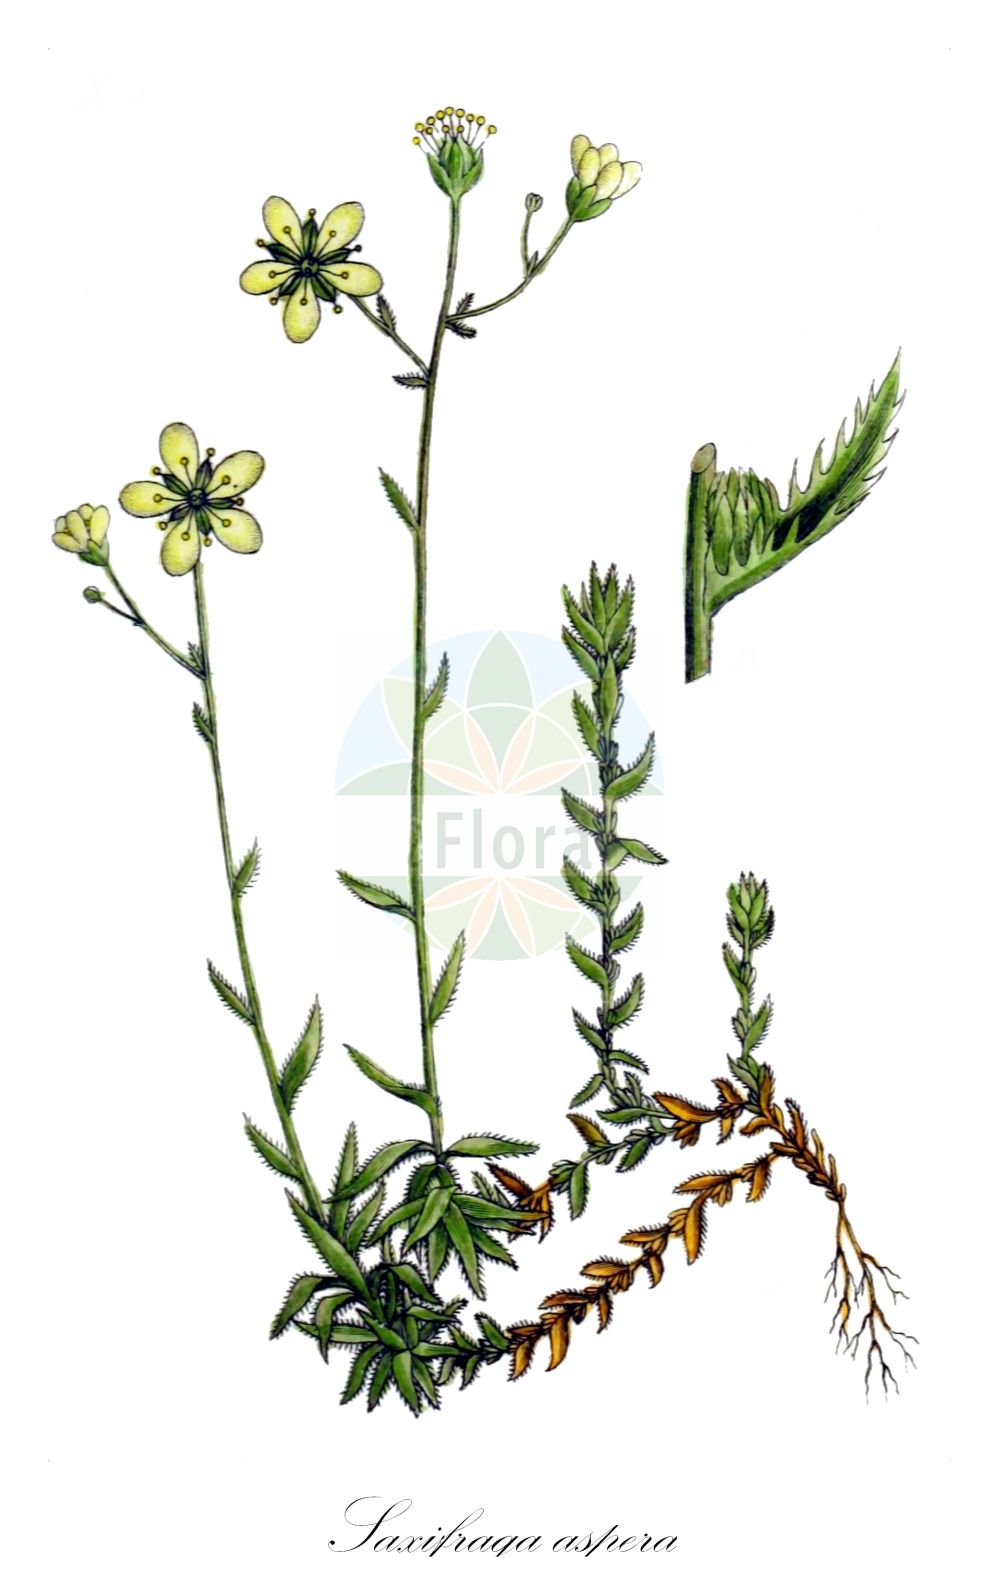 Historische Abbildung von Saxifraga aspera (Rauher Steinbrech - Rough Saxifrage). Das Bild zeigt Blatt, Bluete, Frucht und Same. ---- Historical Drawing of Saxifraga aspera (Rauher Steinbrech - Rough Saxifrage). The image is showing leaf, flower, fruit and seed.(Saxifraga aspera,Rauher Steinbrech,Rough Saxifrage,Saxifraga aspera,Saxifraga aspera L. subsp.,Saxifraga etrusca,Rauher Steinbrech,Rough Saxifrage,Stiff-haired Saxifrage,Saxifraga,Steinbrech,Saxifrage,Saxifragaceae,Steinbrechgewächse,Saxifrage family,Blatt,Bluete,Frucht,Same,leaf,flower,fruit,seed,Sturm (1796f))